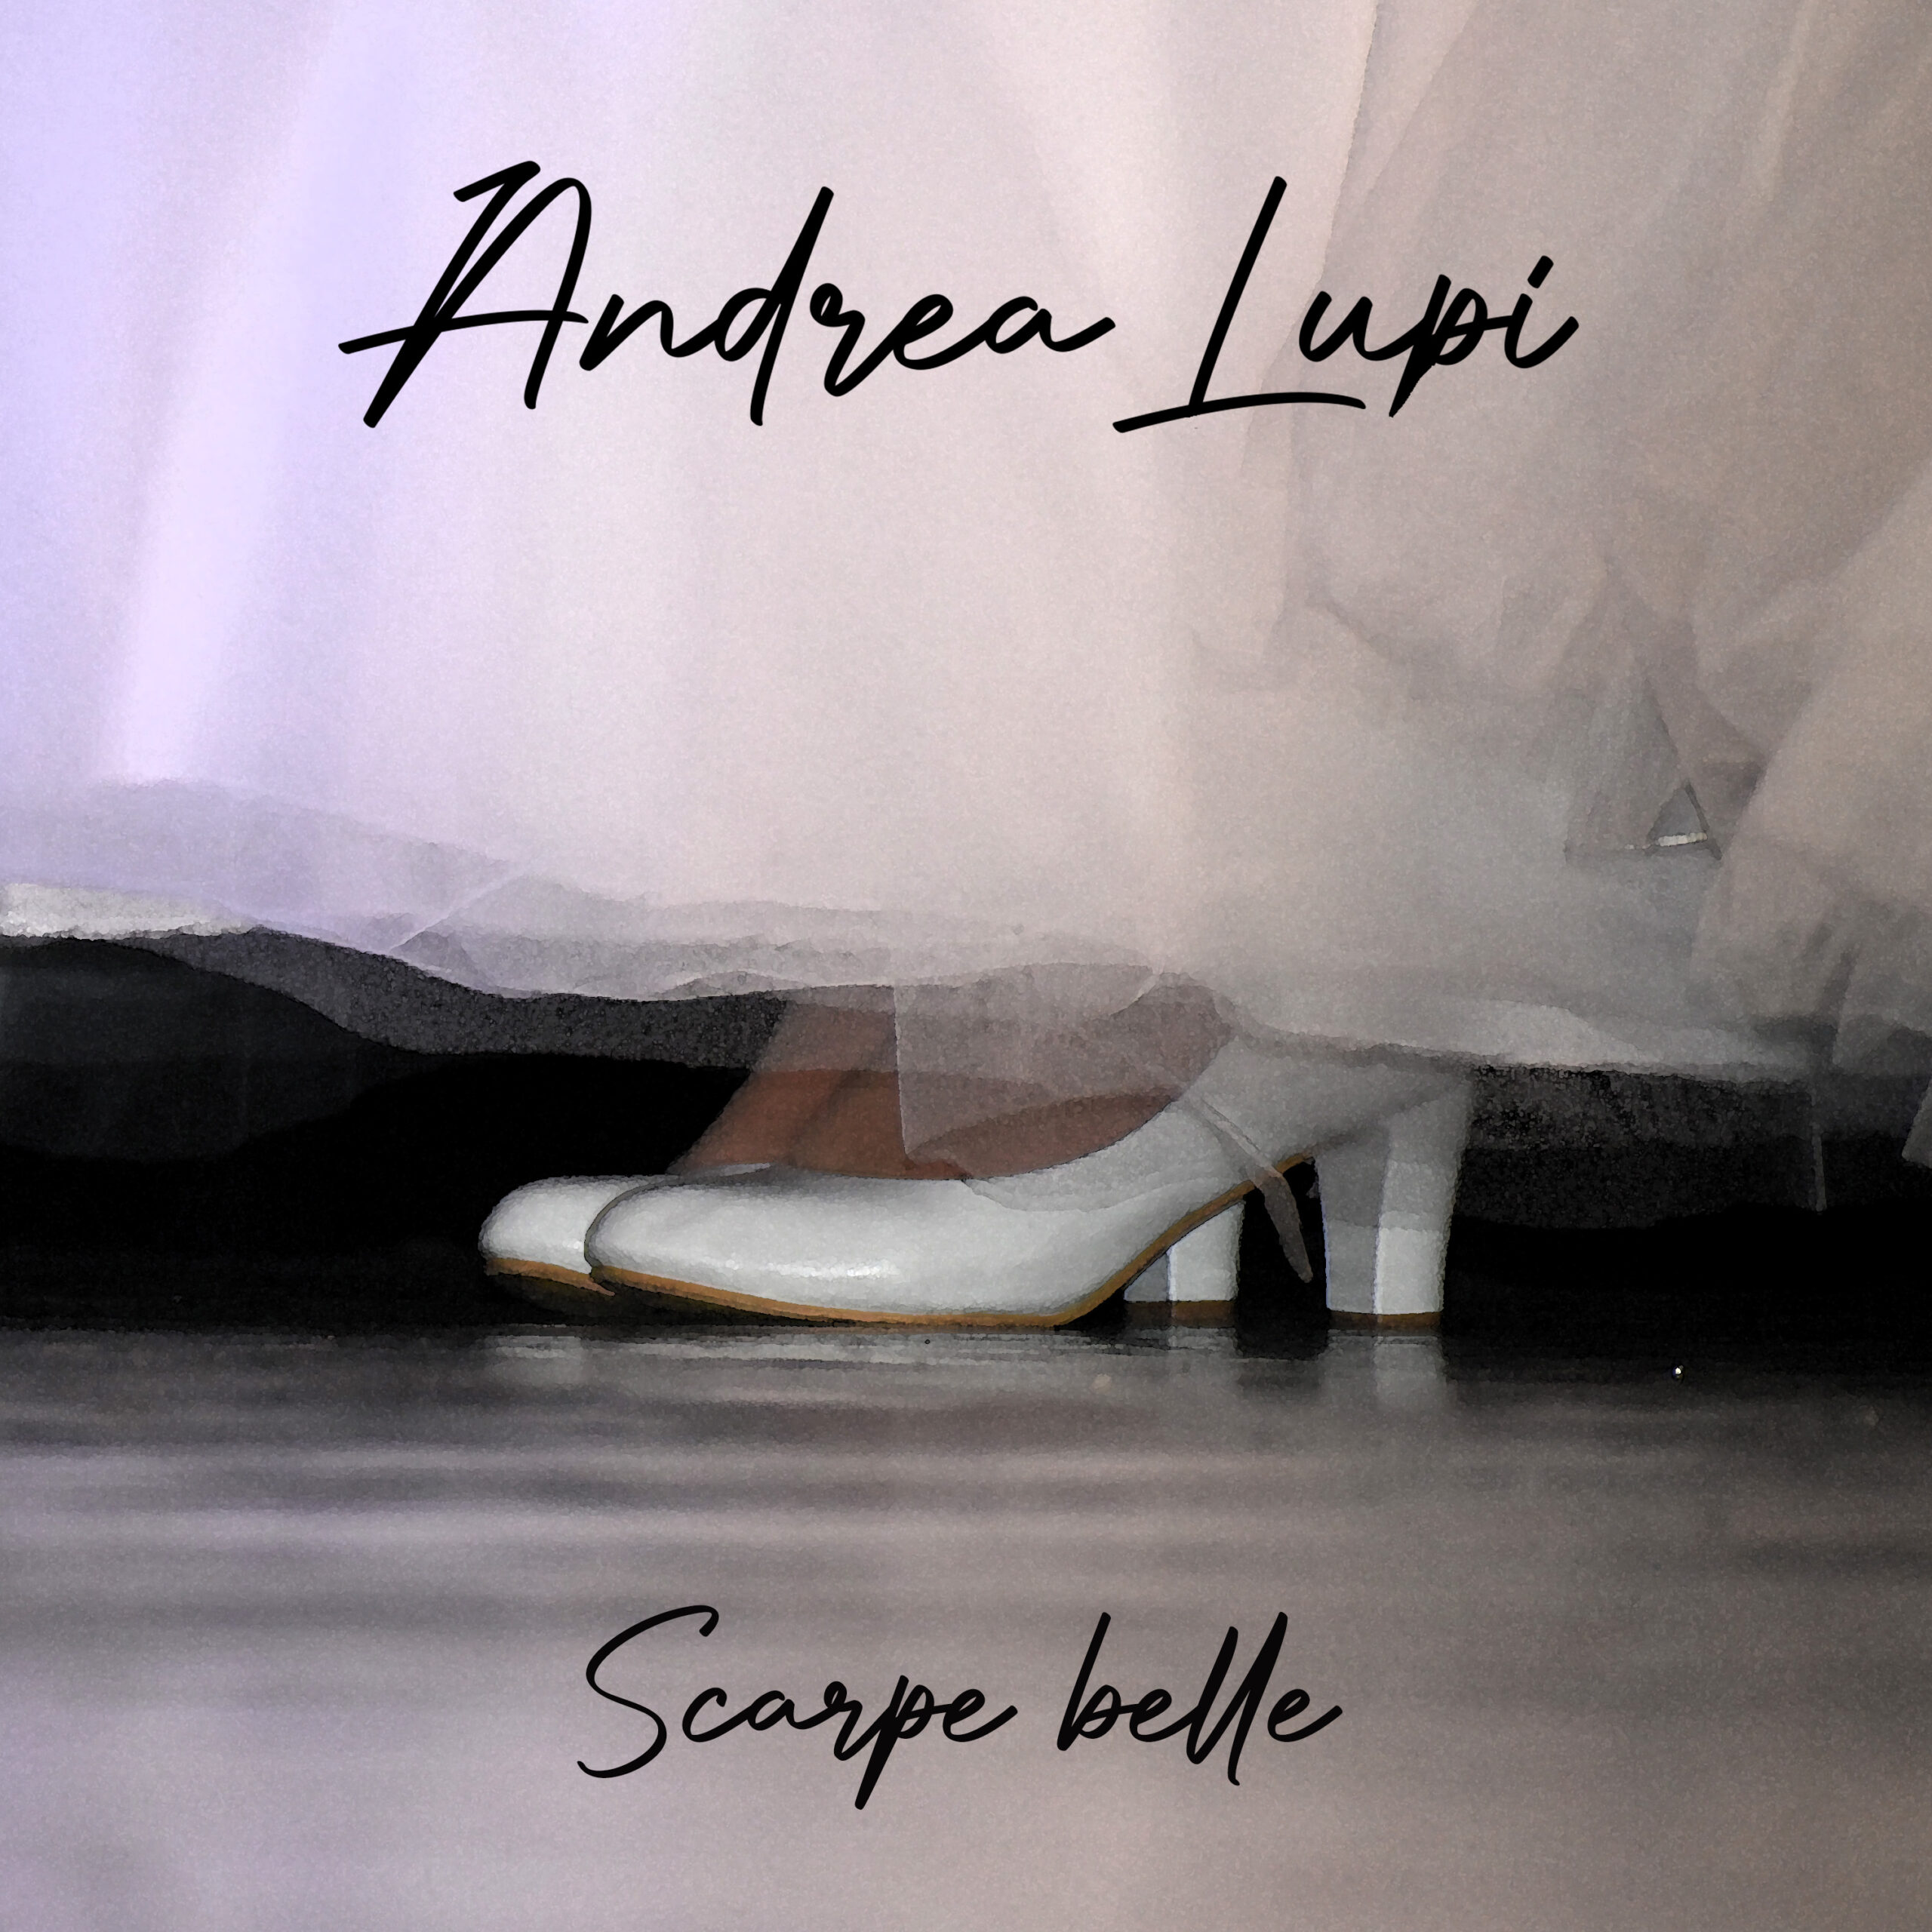 “Scarpe belle”: fuori ora il nuovo singolo di Andrea Lupi